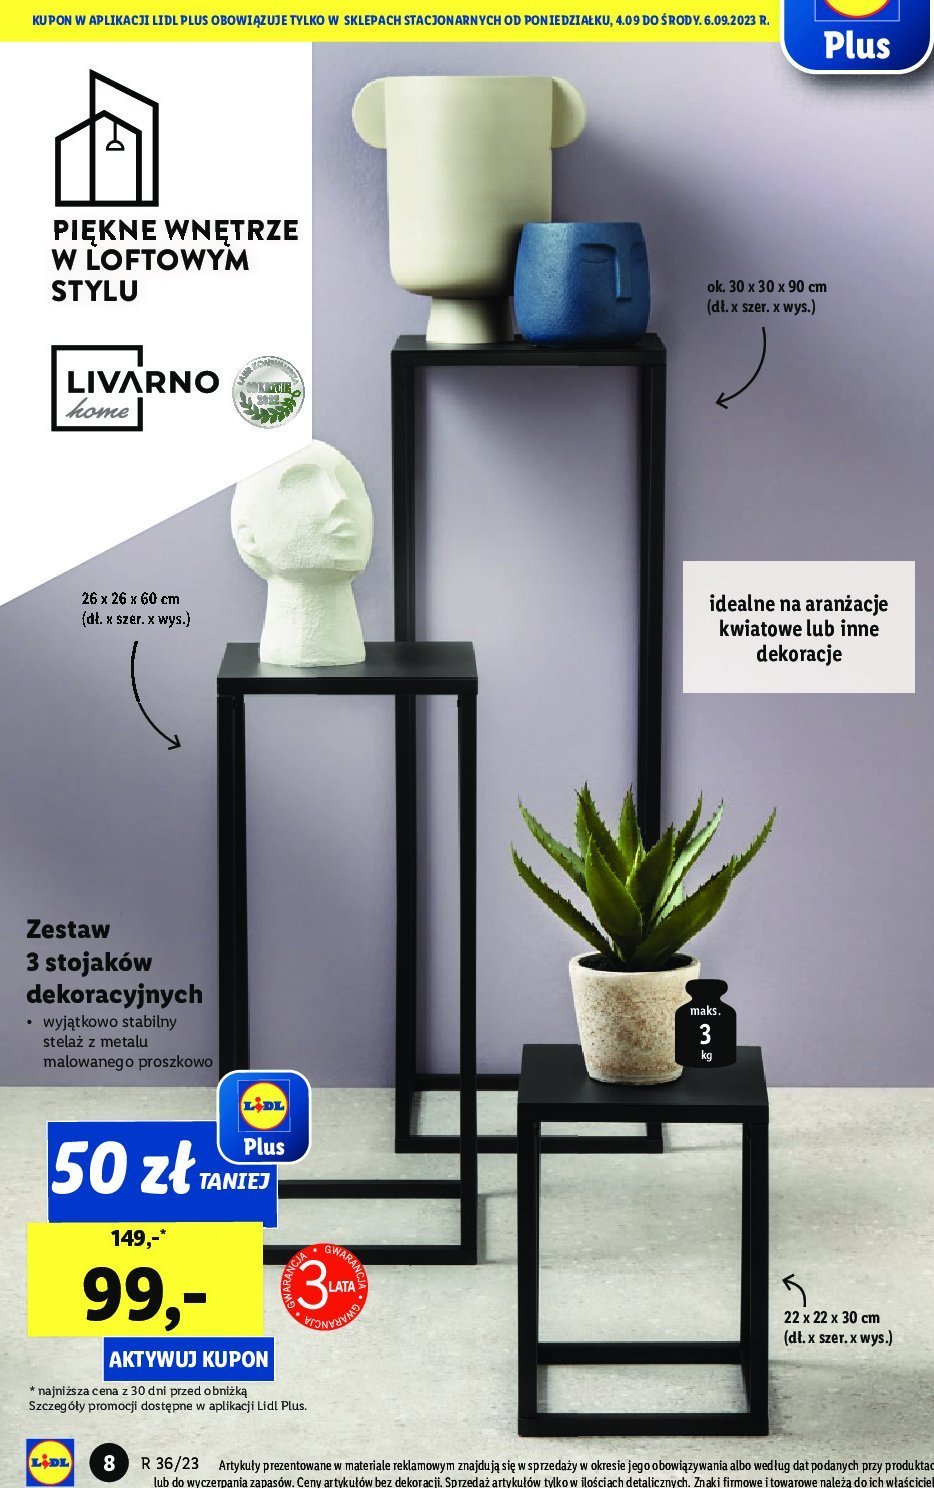 Zestaw stojaków dekoracyjnych - - HOME - Blix.pl Brak cena opinie - sklep ofert LIVARNO | - promocje